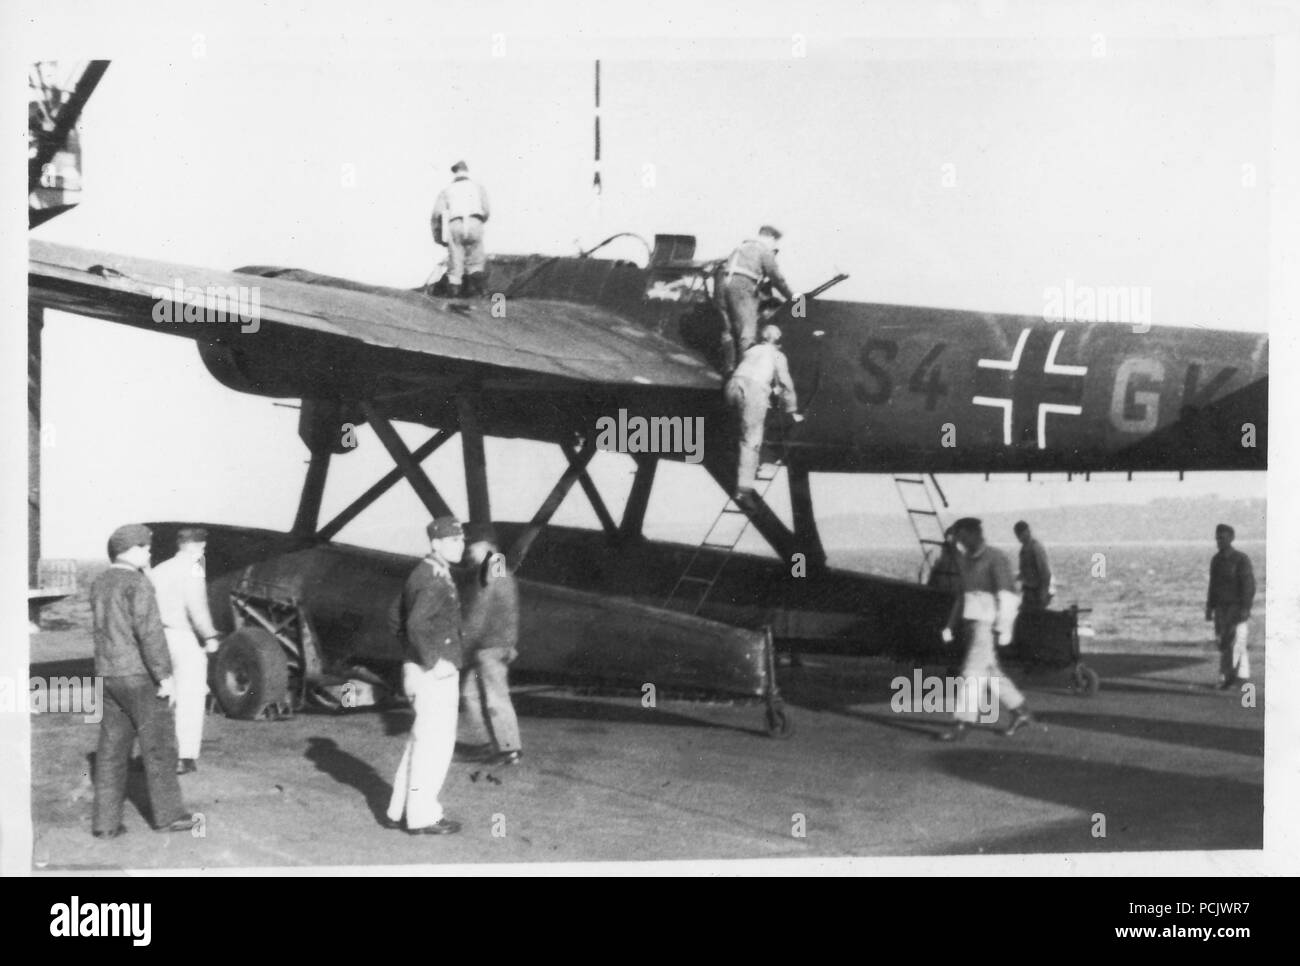 Bild aus dem Fotoalbum von Oberleutnant Wilhelm Gaul - noch die Codes seiner ehemaligen Einheit, 2. Staffel, Küstenfliegergruppe 506, eine Heinkel He 115 der 2. Staffel Küstenfliegergruppe 906 bereitet als die Crew board im Oktober 1941 zu heben. Stockfoto